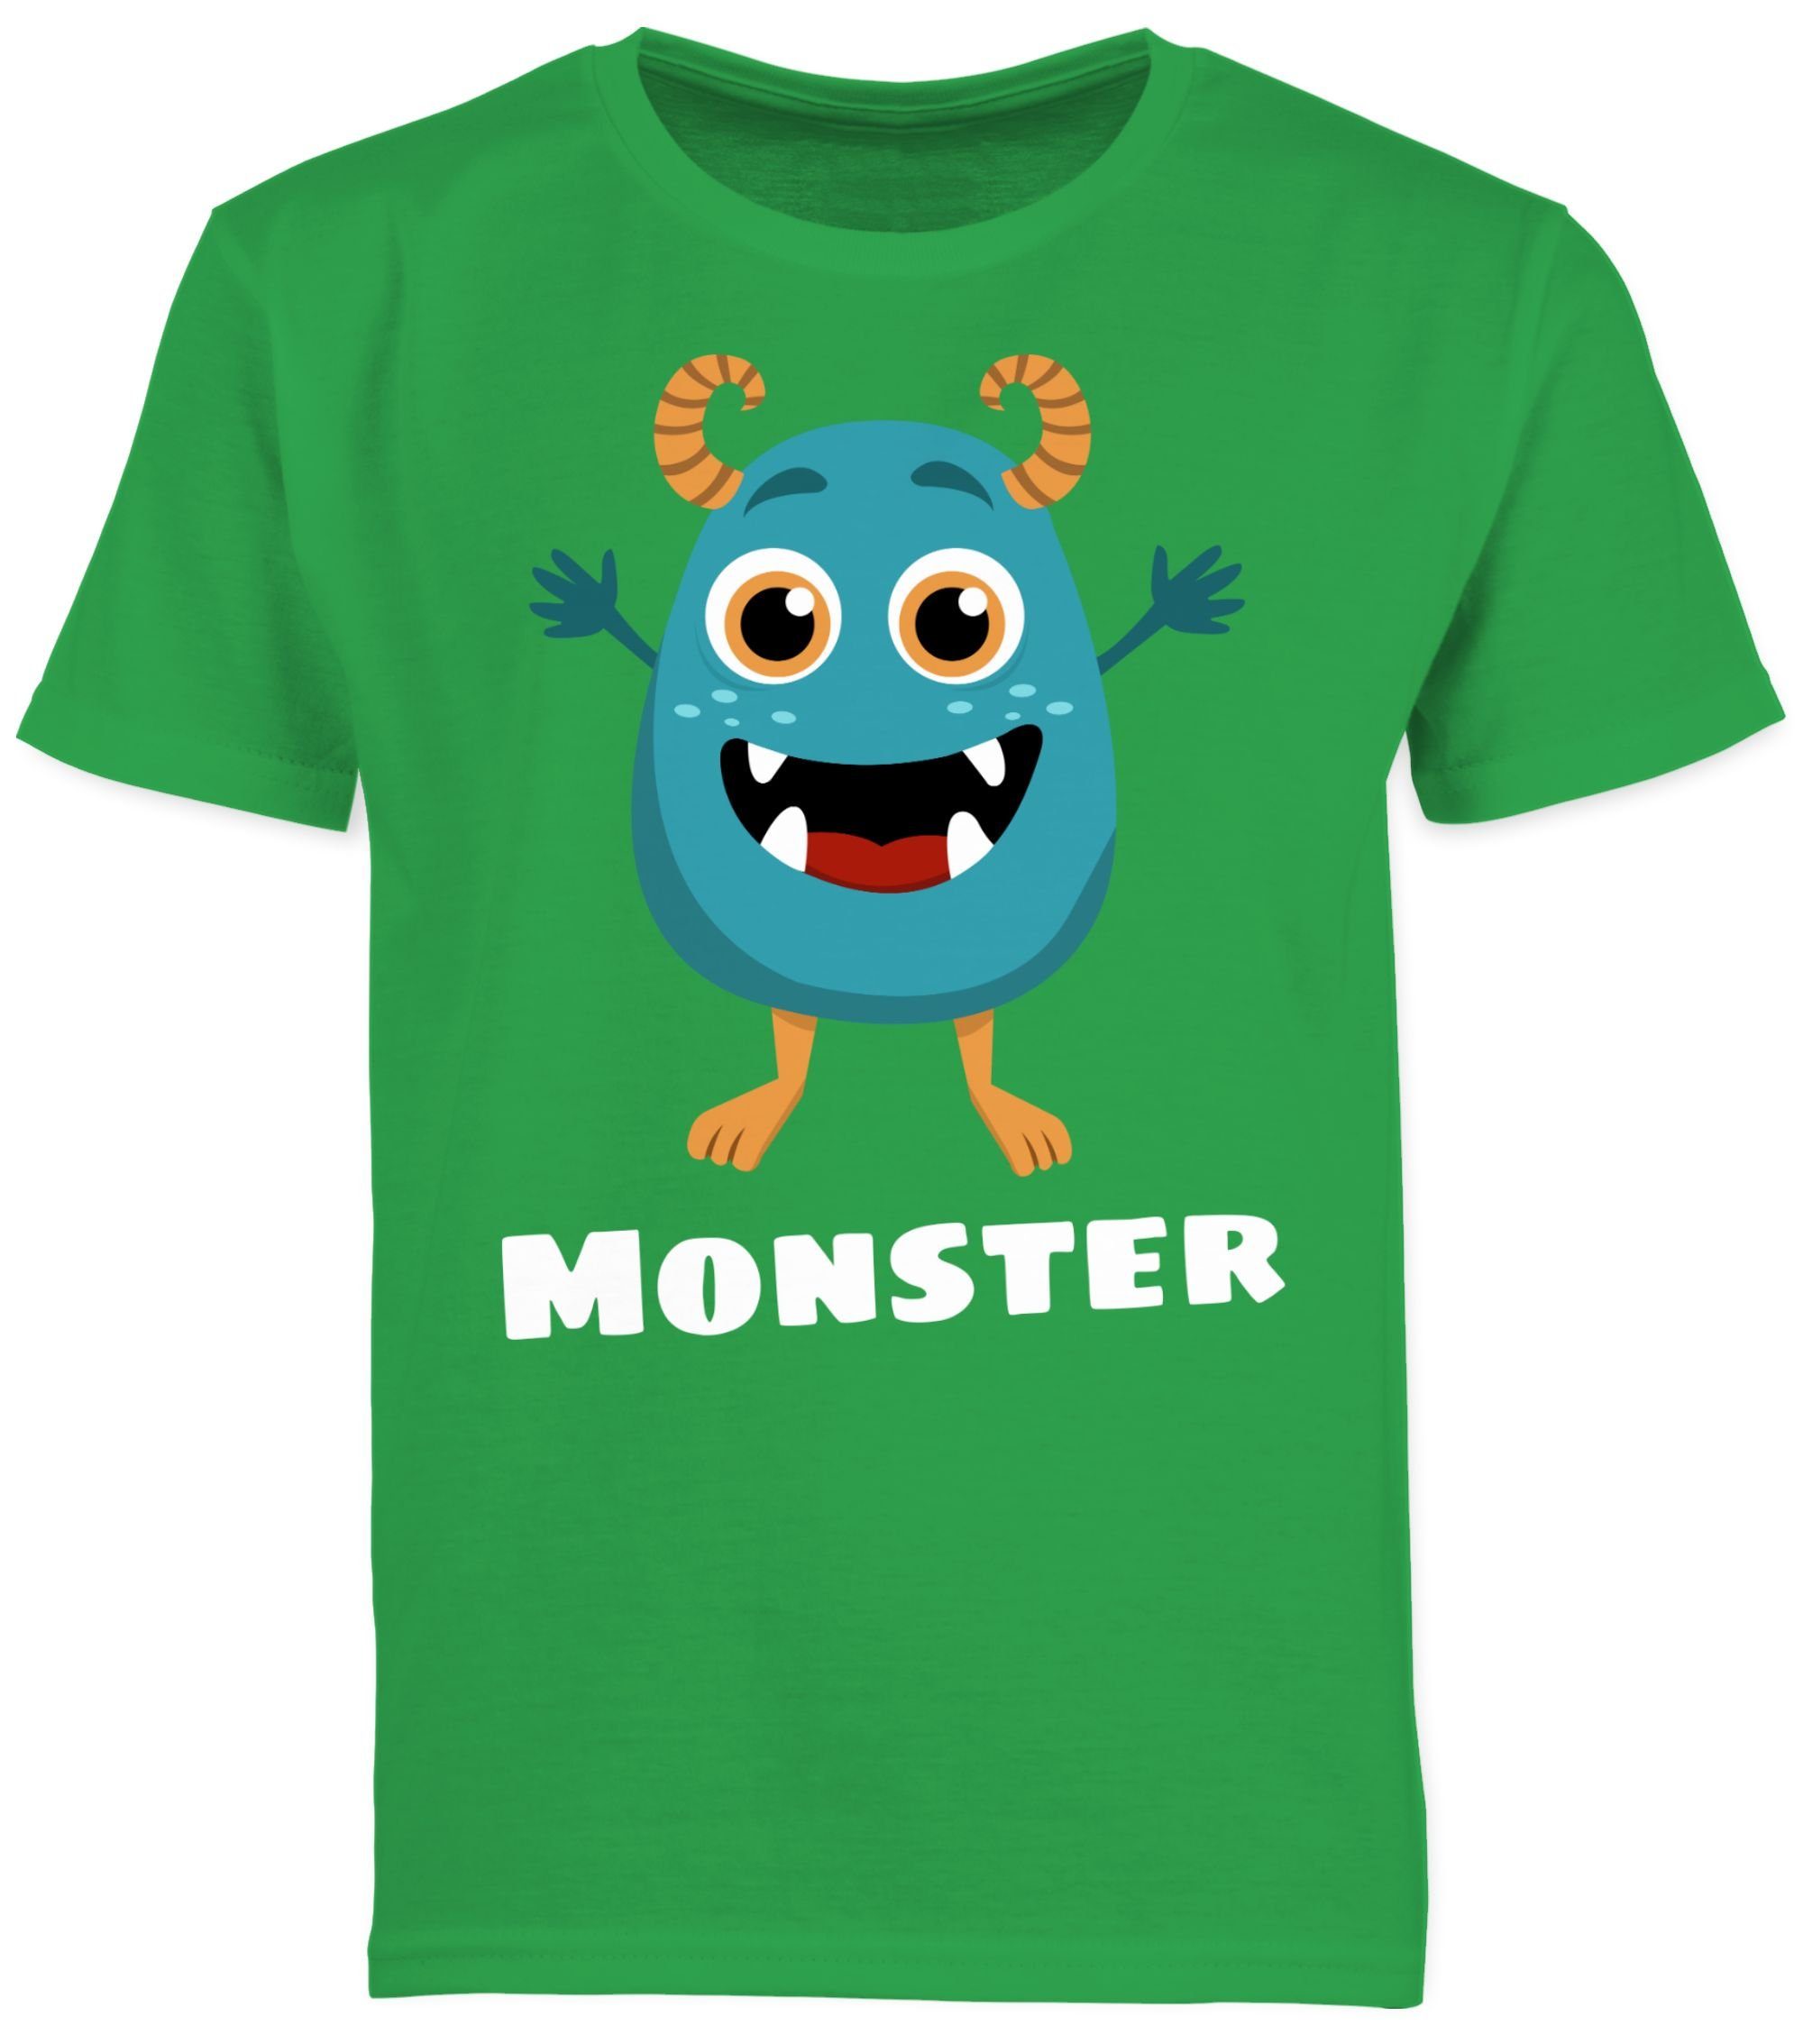 Monster Grün Partner-Look Partner-Look 2 Kind T-Shirt Kind Familie Shirtracer